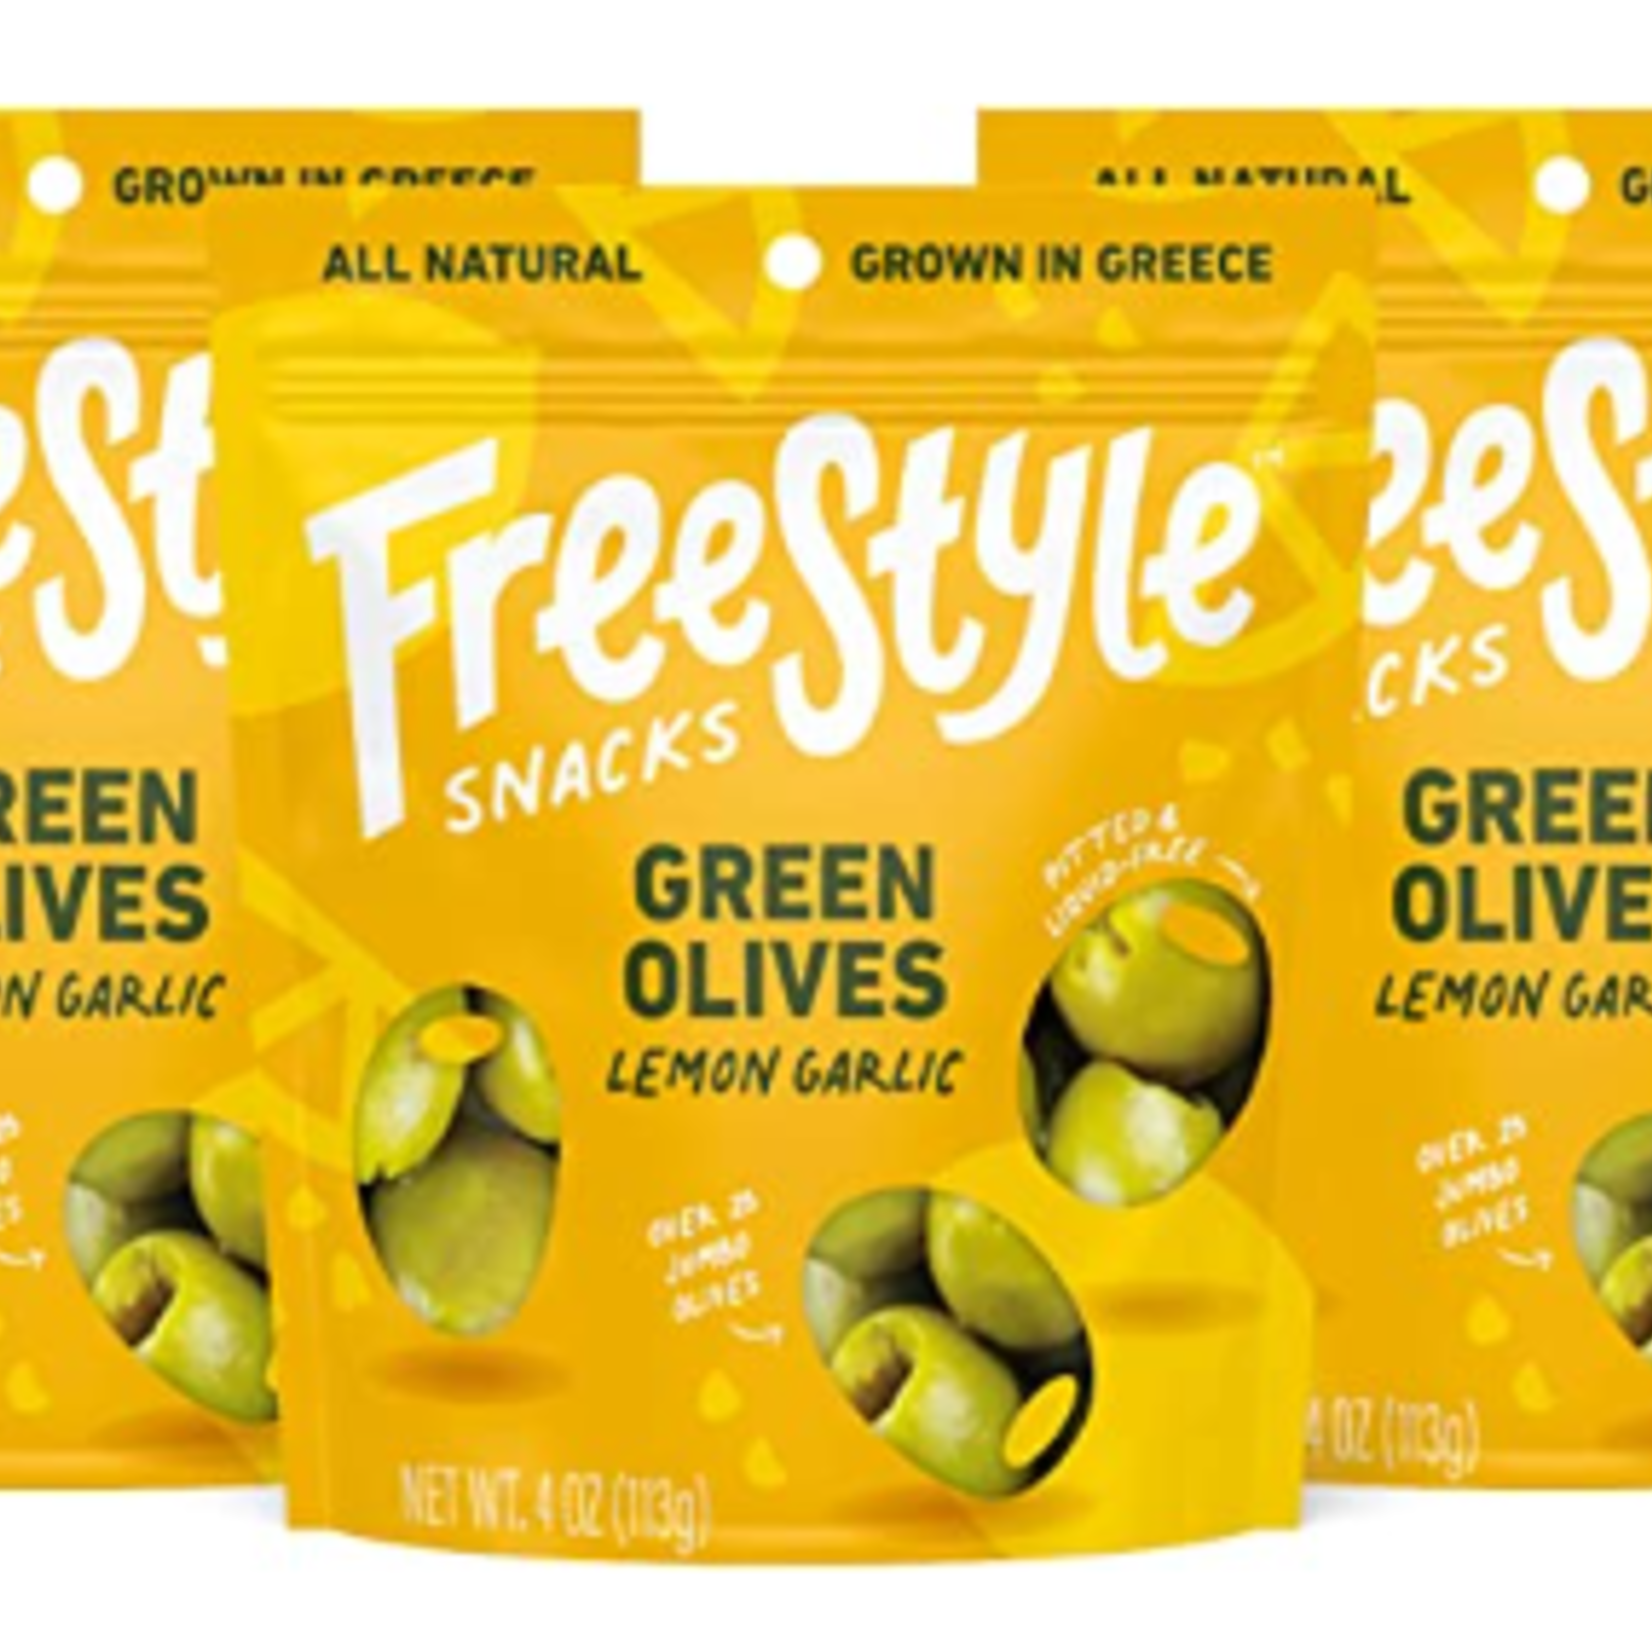 Free Style FreeStyle Snacks Green Olives Lemon Garlic